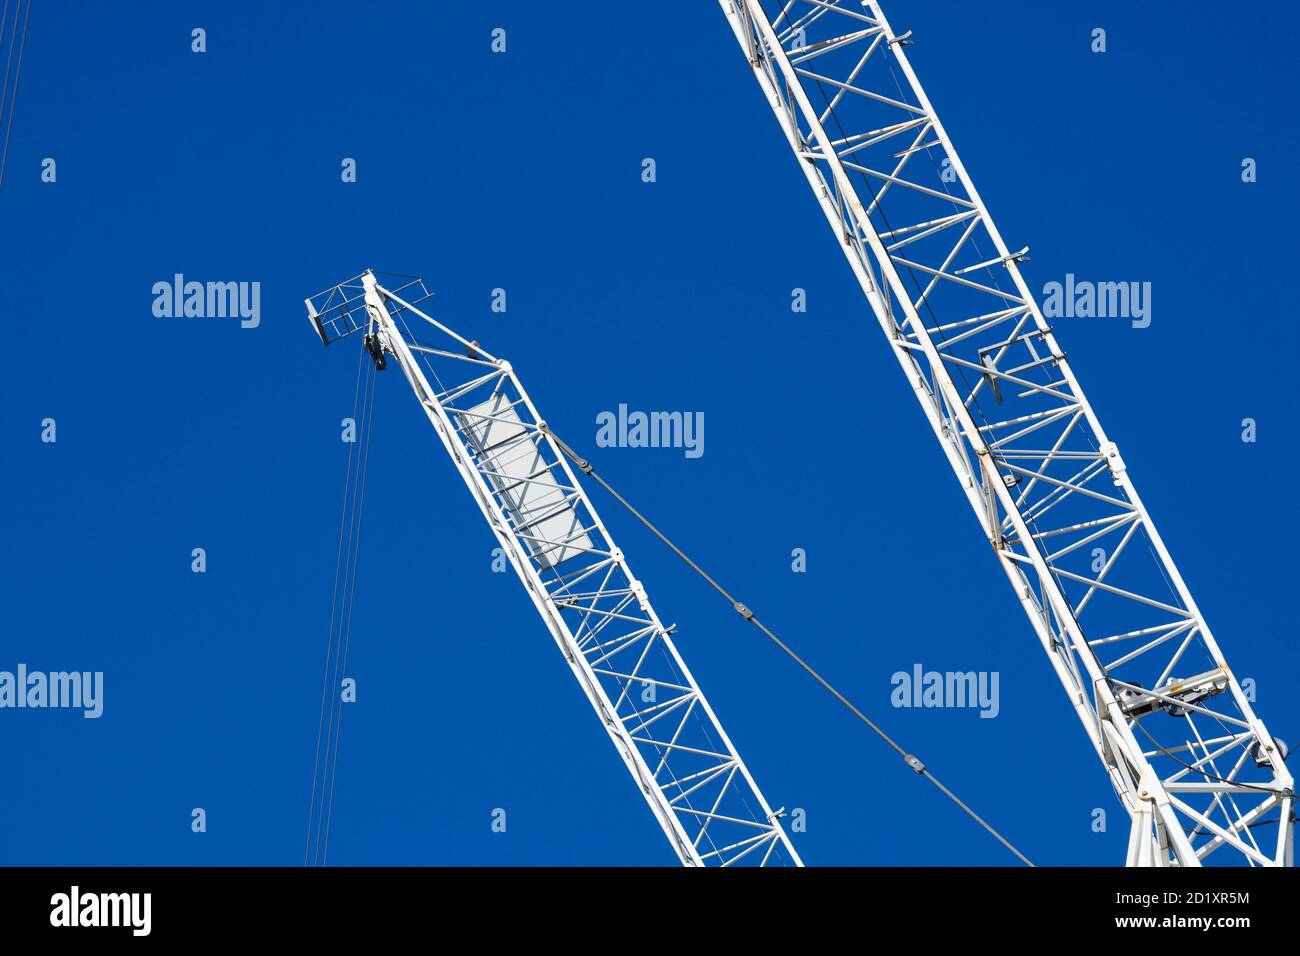 Kran Jibs gegen einen tiefblauen Himmel, UK Baustelle Stockfoto